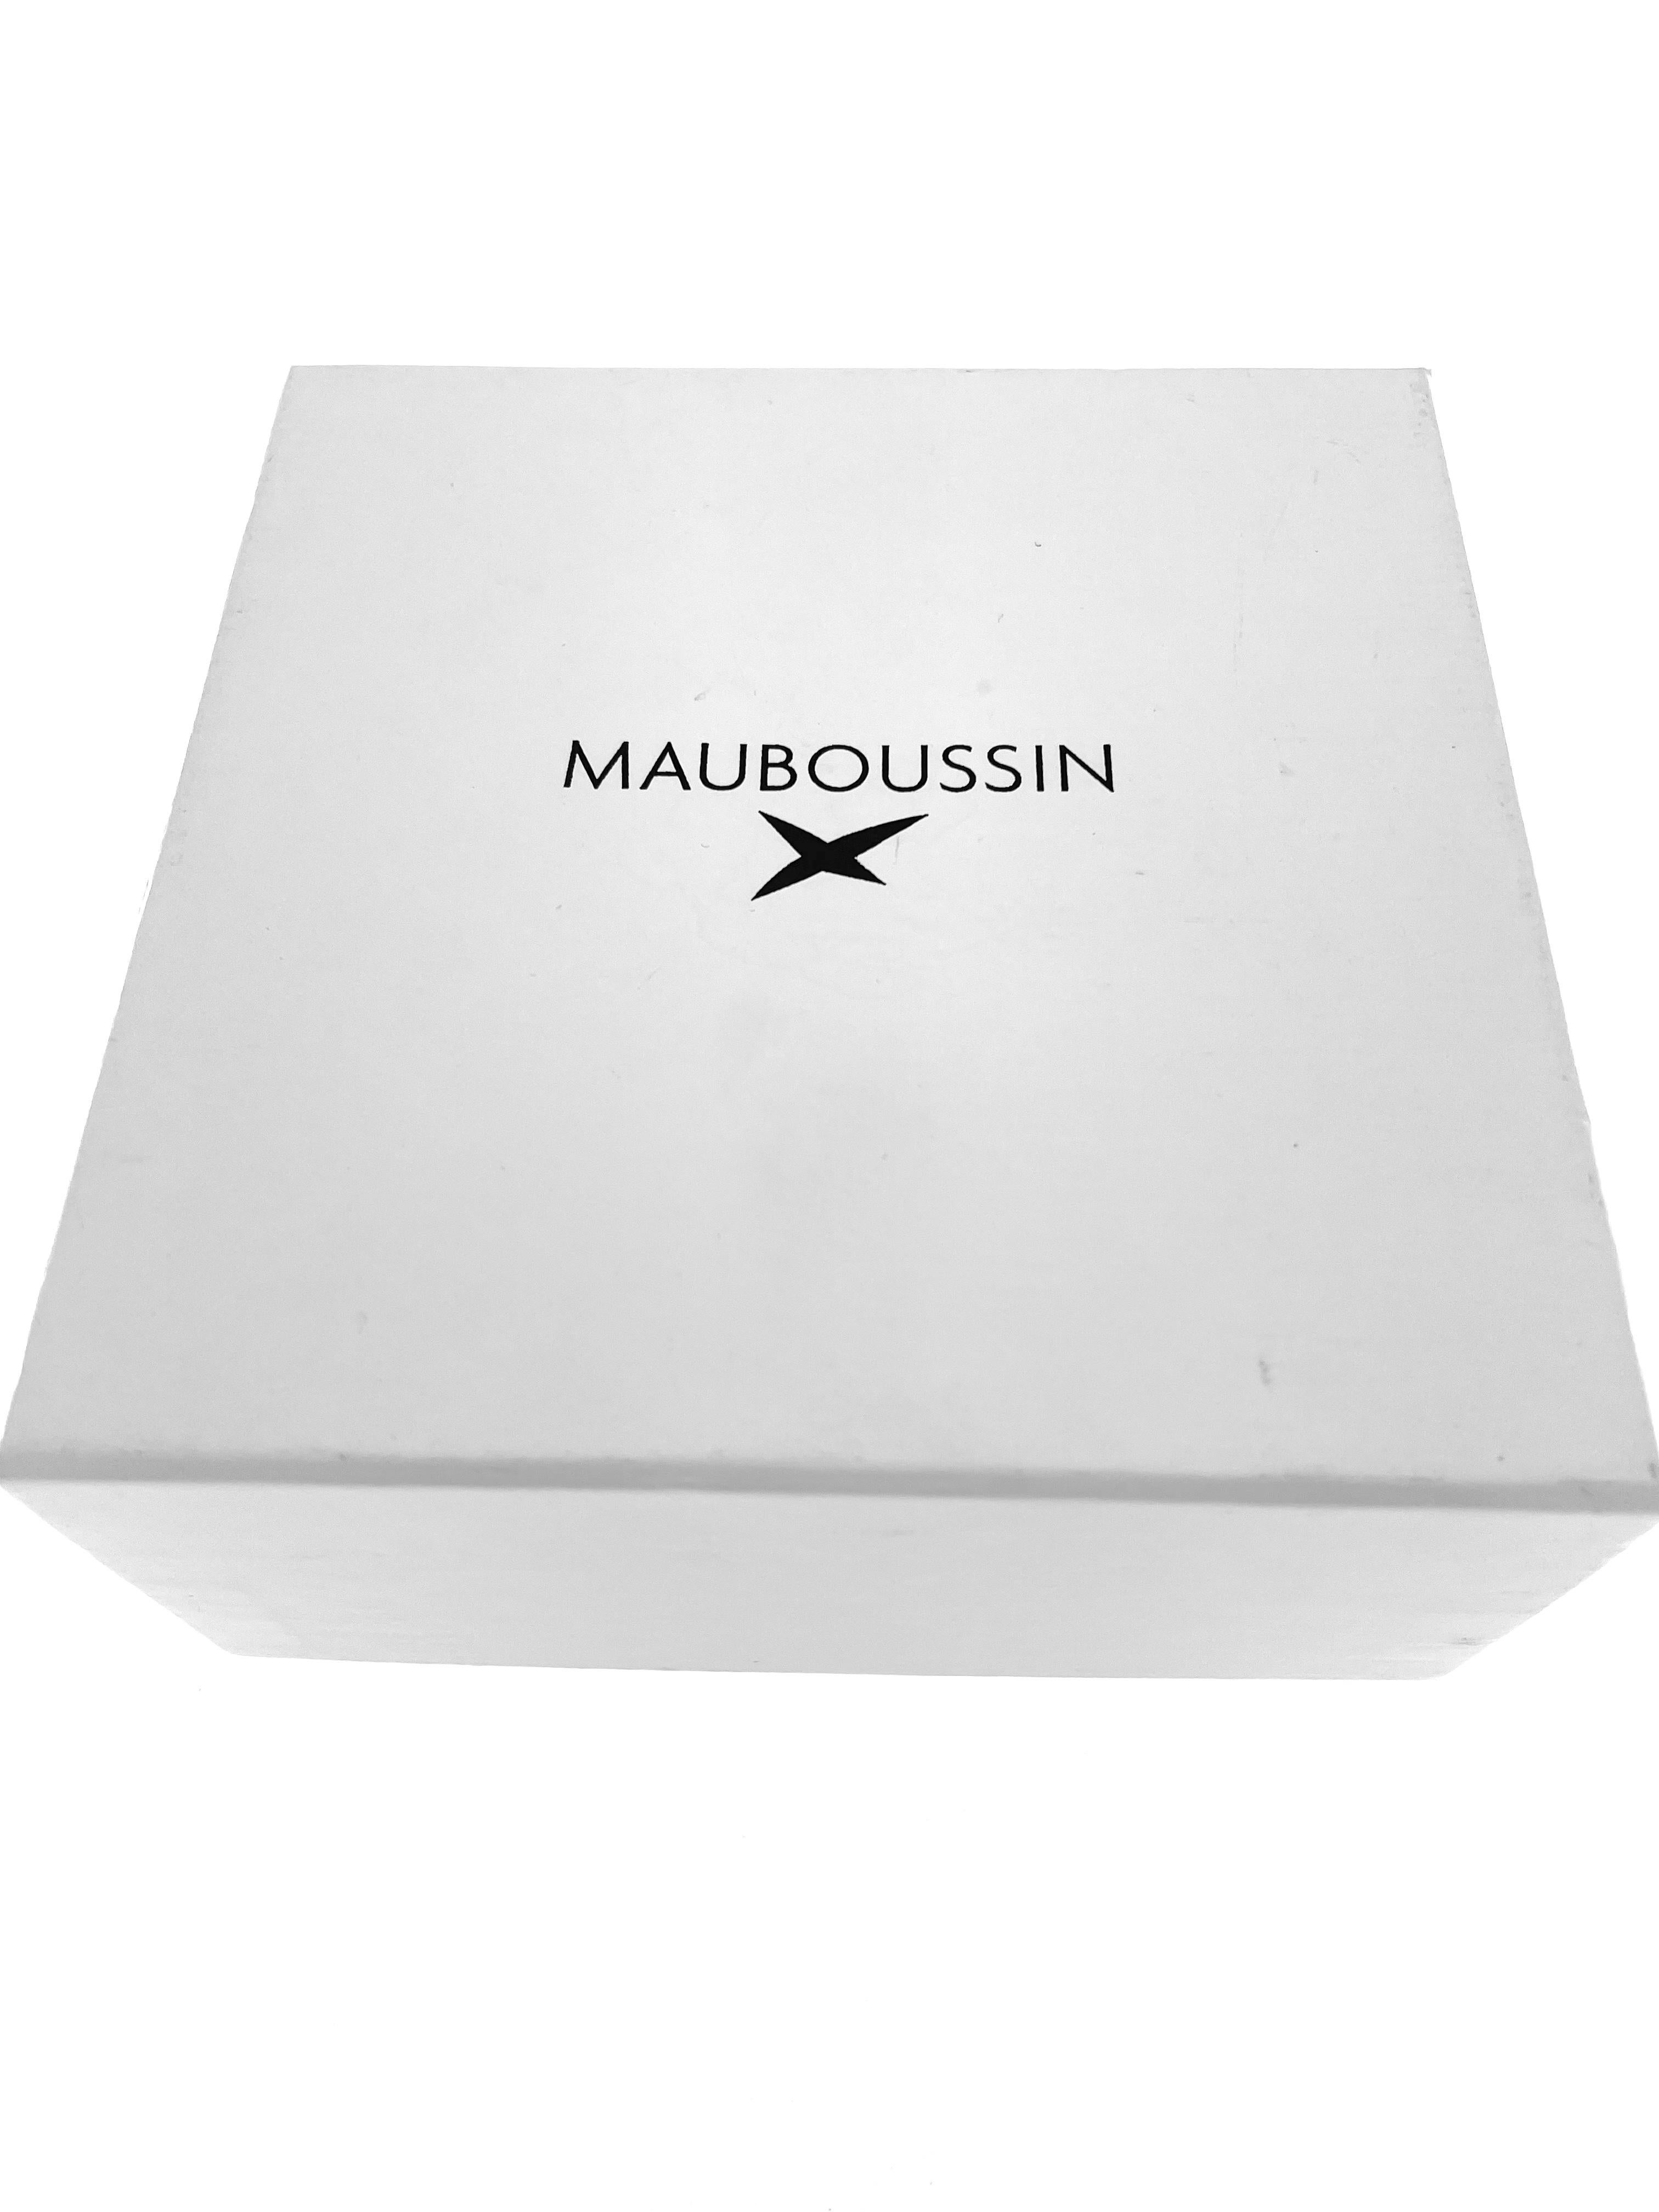 The Mauboussin 